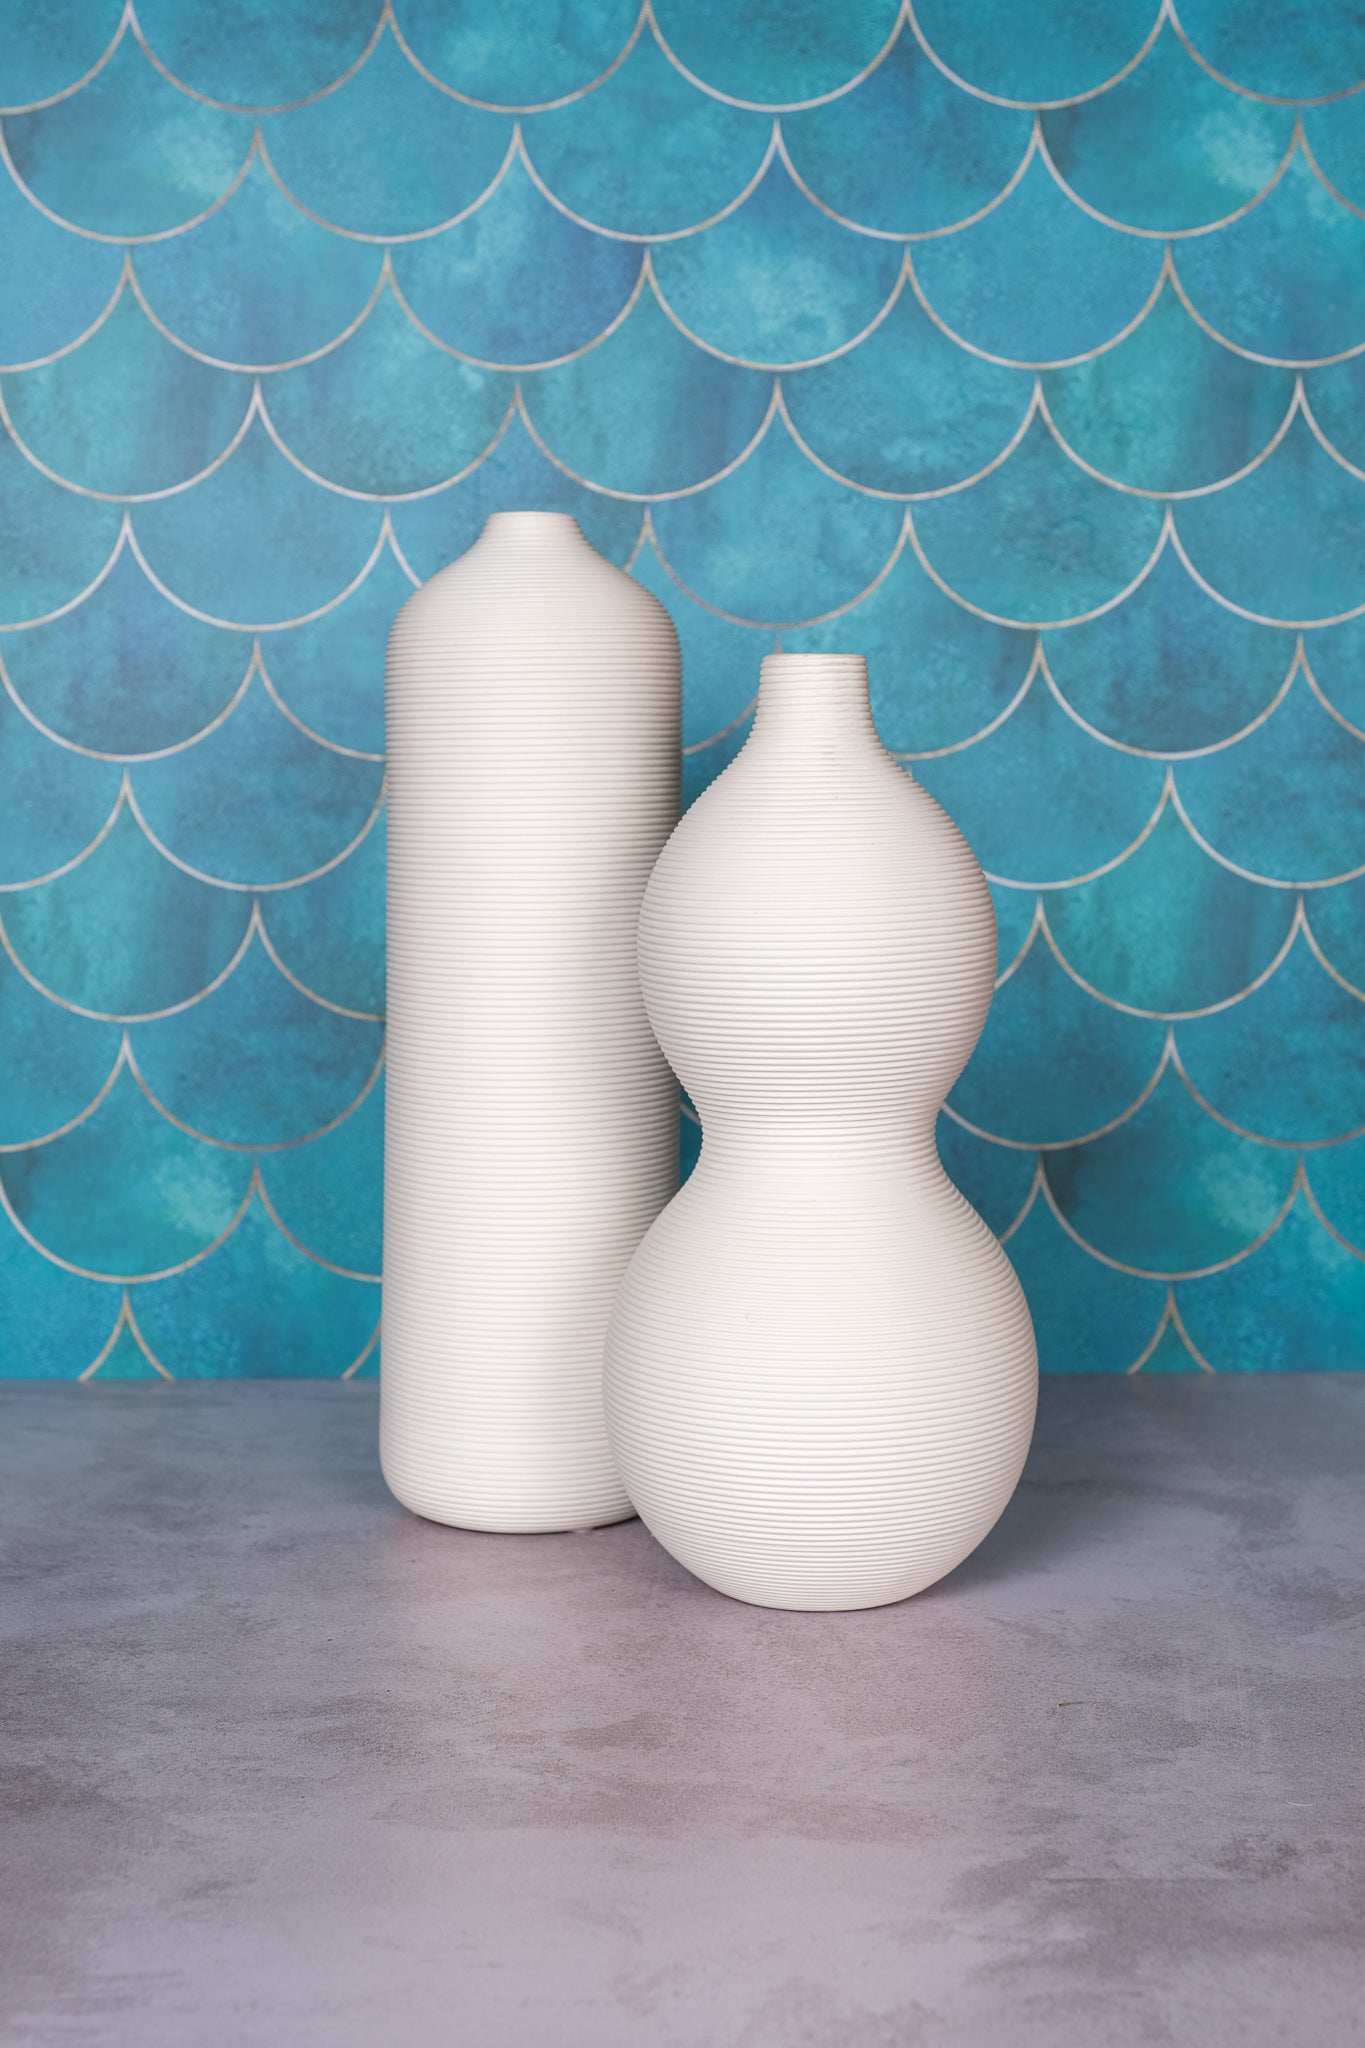 Tall White Versailles Ceramic Vase (33cm)